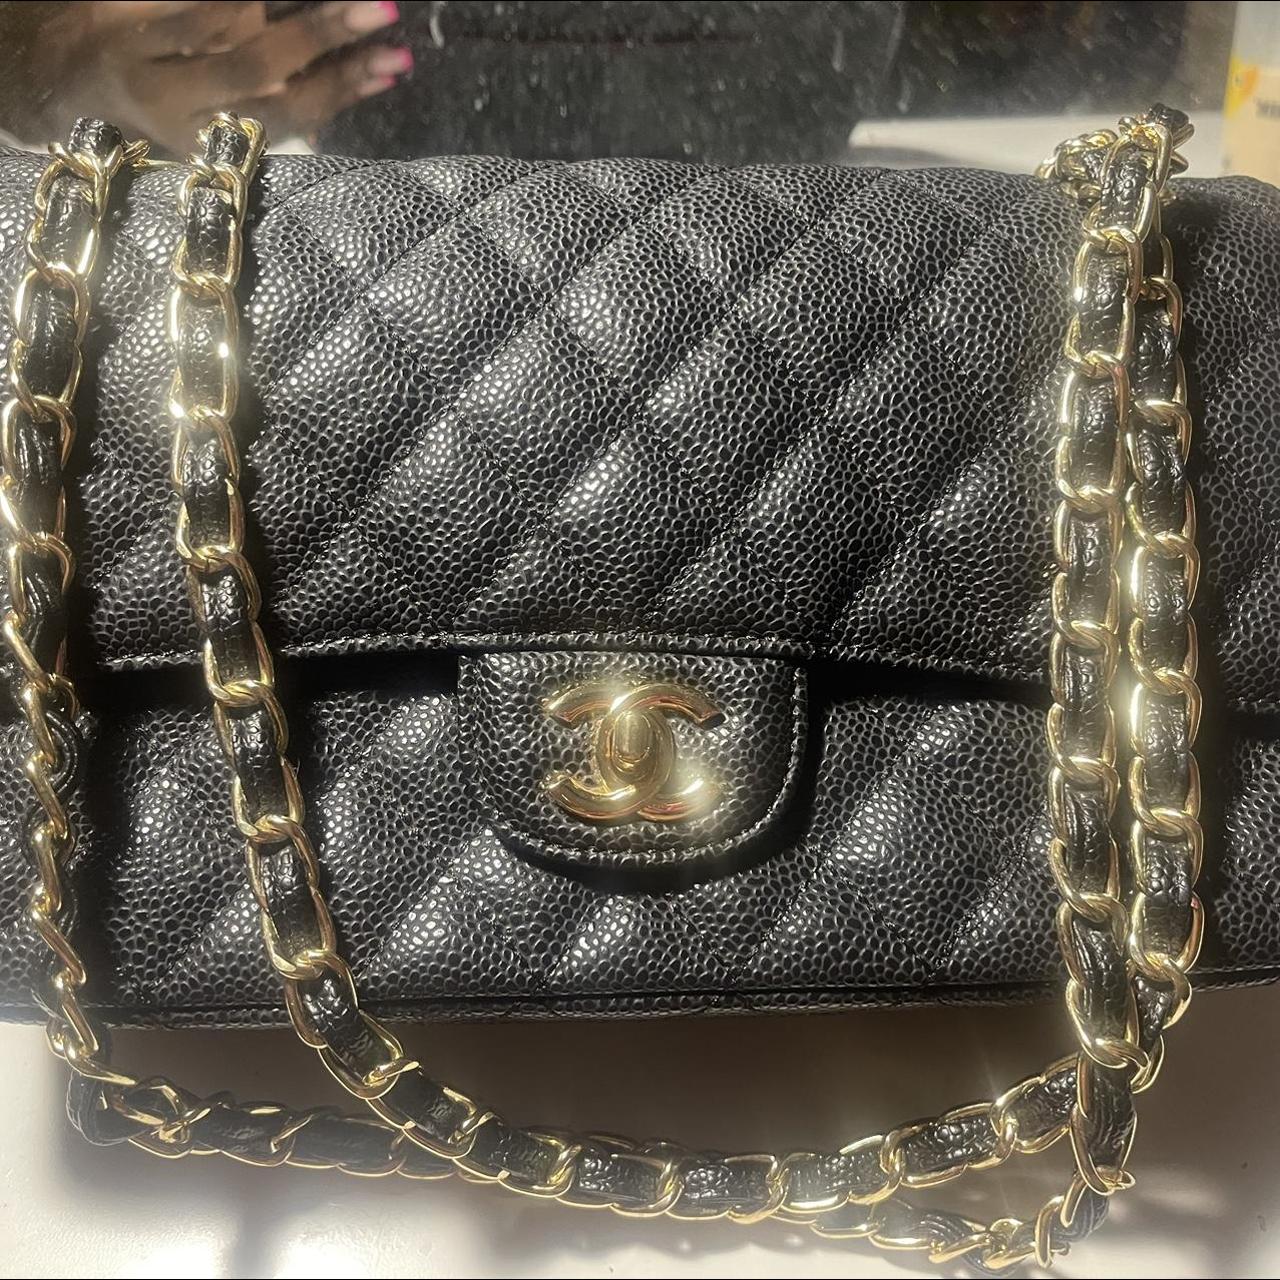 Chanel bag-vintage - Depop